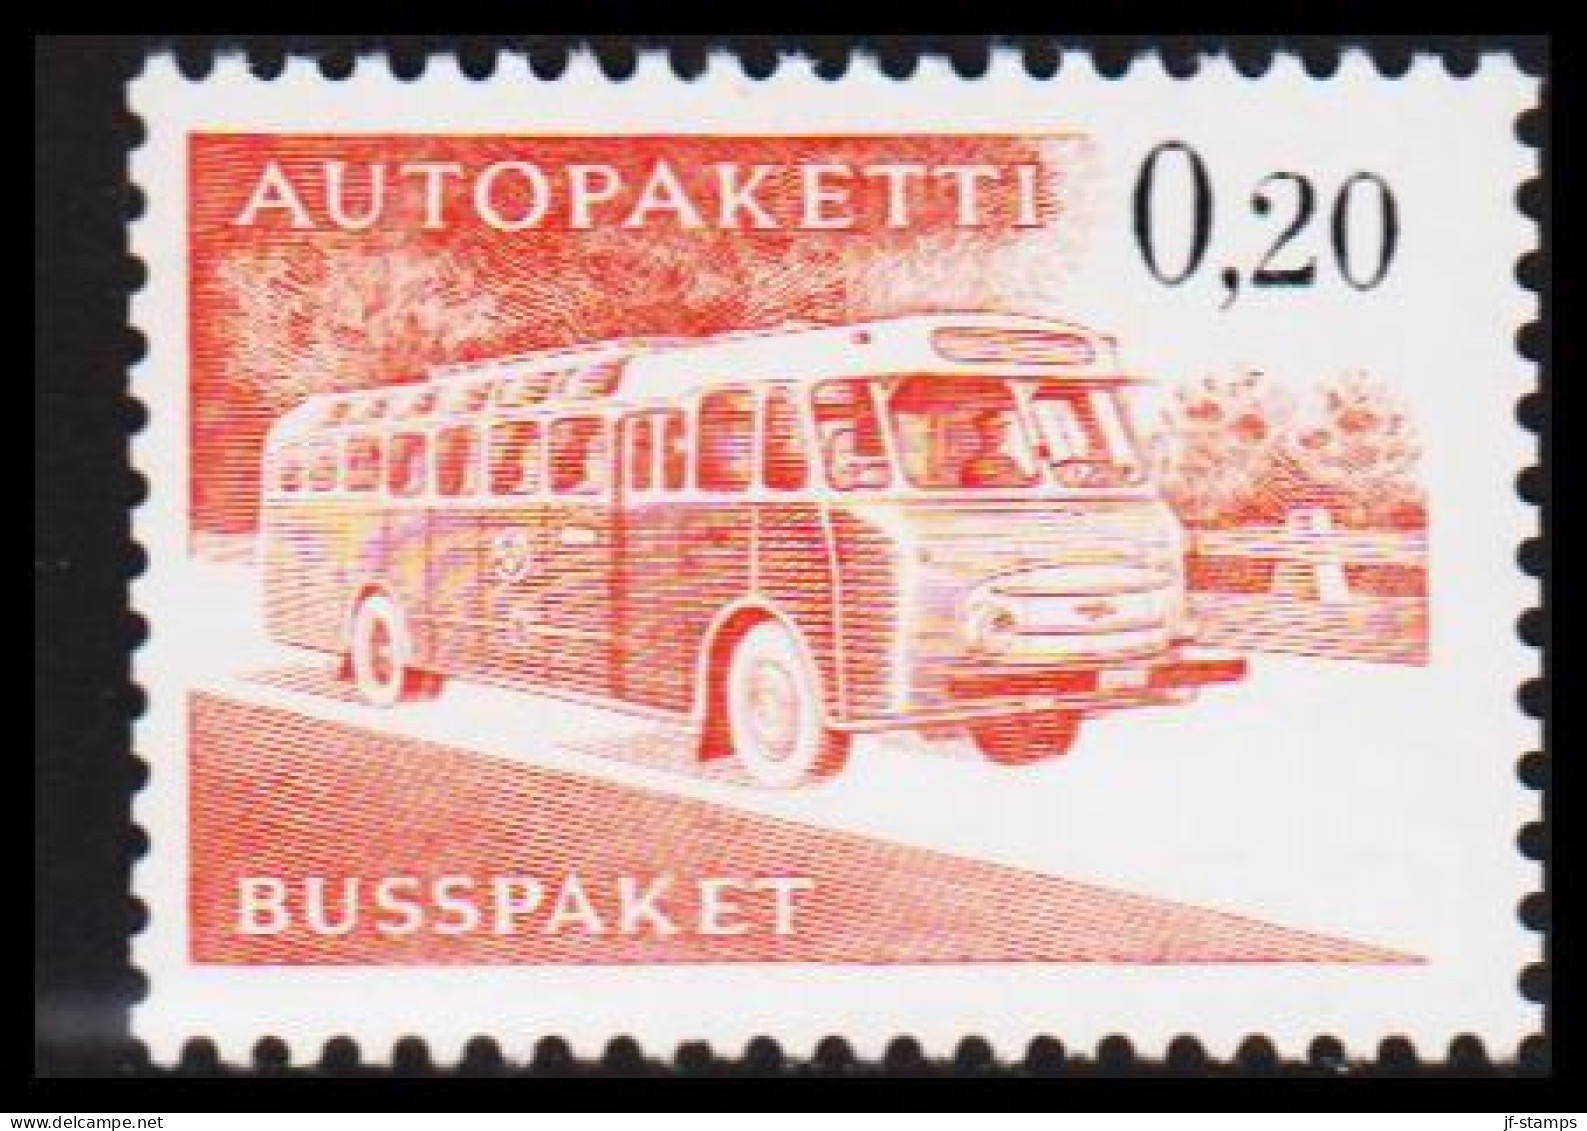 1963-1980. FINLAND. Mail Bus. 0,20 Mk. AUTOPAKETTI - BUSSPAKET Never Hinged. Lumogen. Yell... (Michel AP 11y) - JF535628 - Bus Parcels / Colis Par Autobus / Pakjes Per Postbus